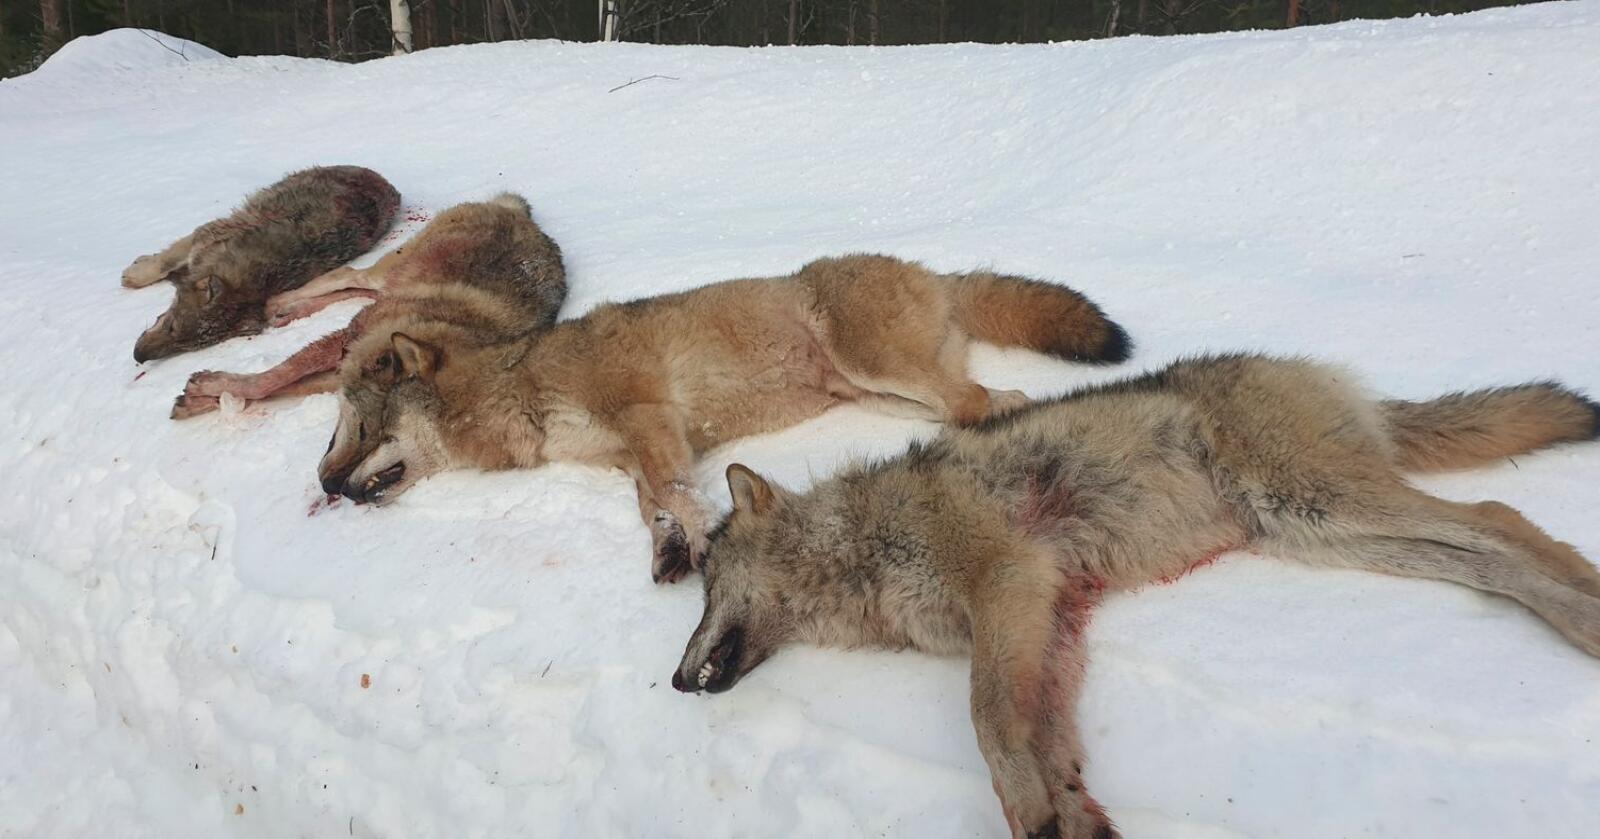 Fire av de seks ulvene i Letjennareviret i Elverum i Hedmark ble skutt på første dag av lisensjakten, det var alfaparet og to årsvalper. Foto: Statens Naturoppsyn / NTB